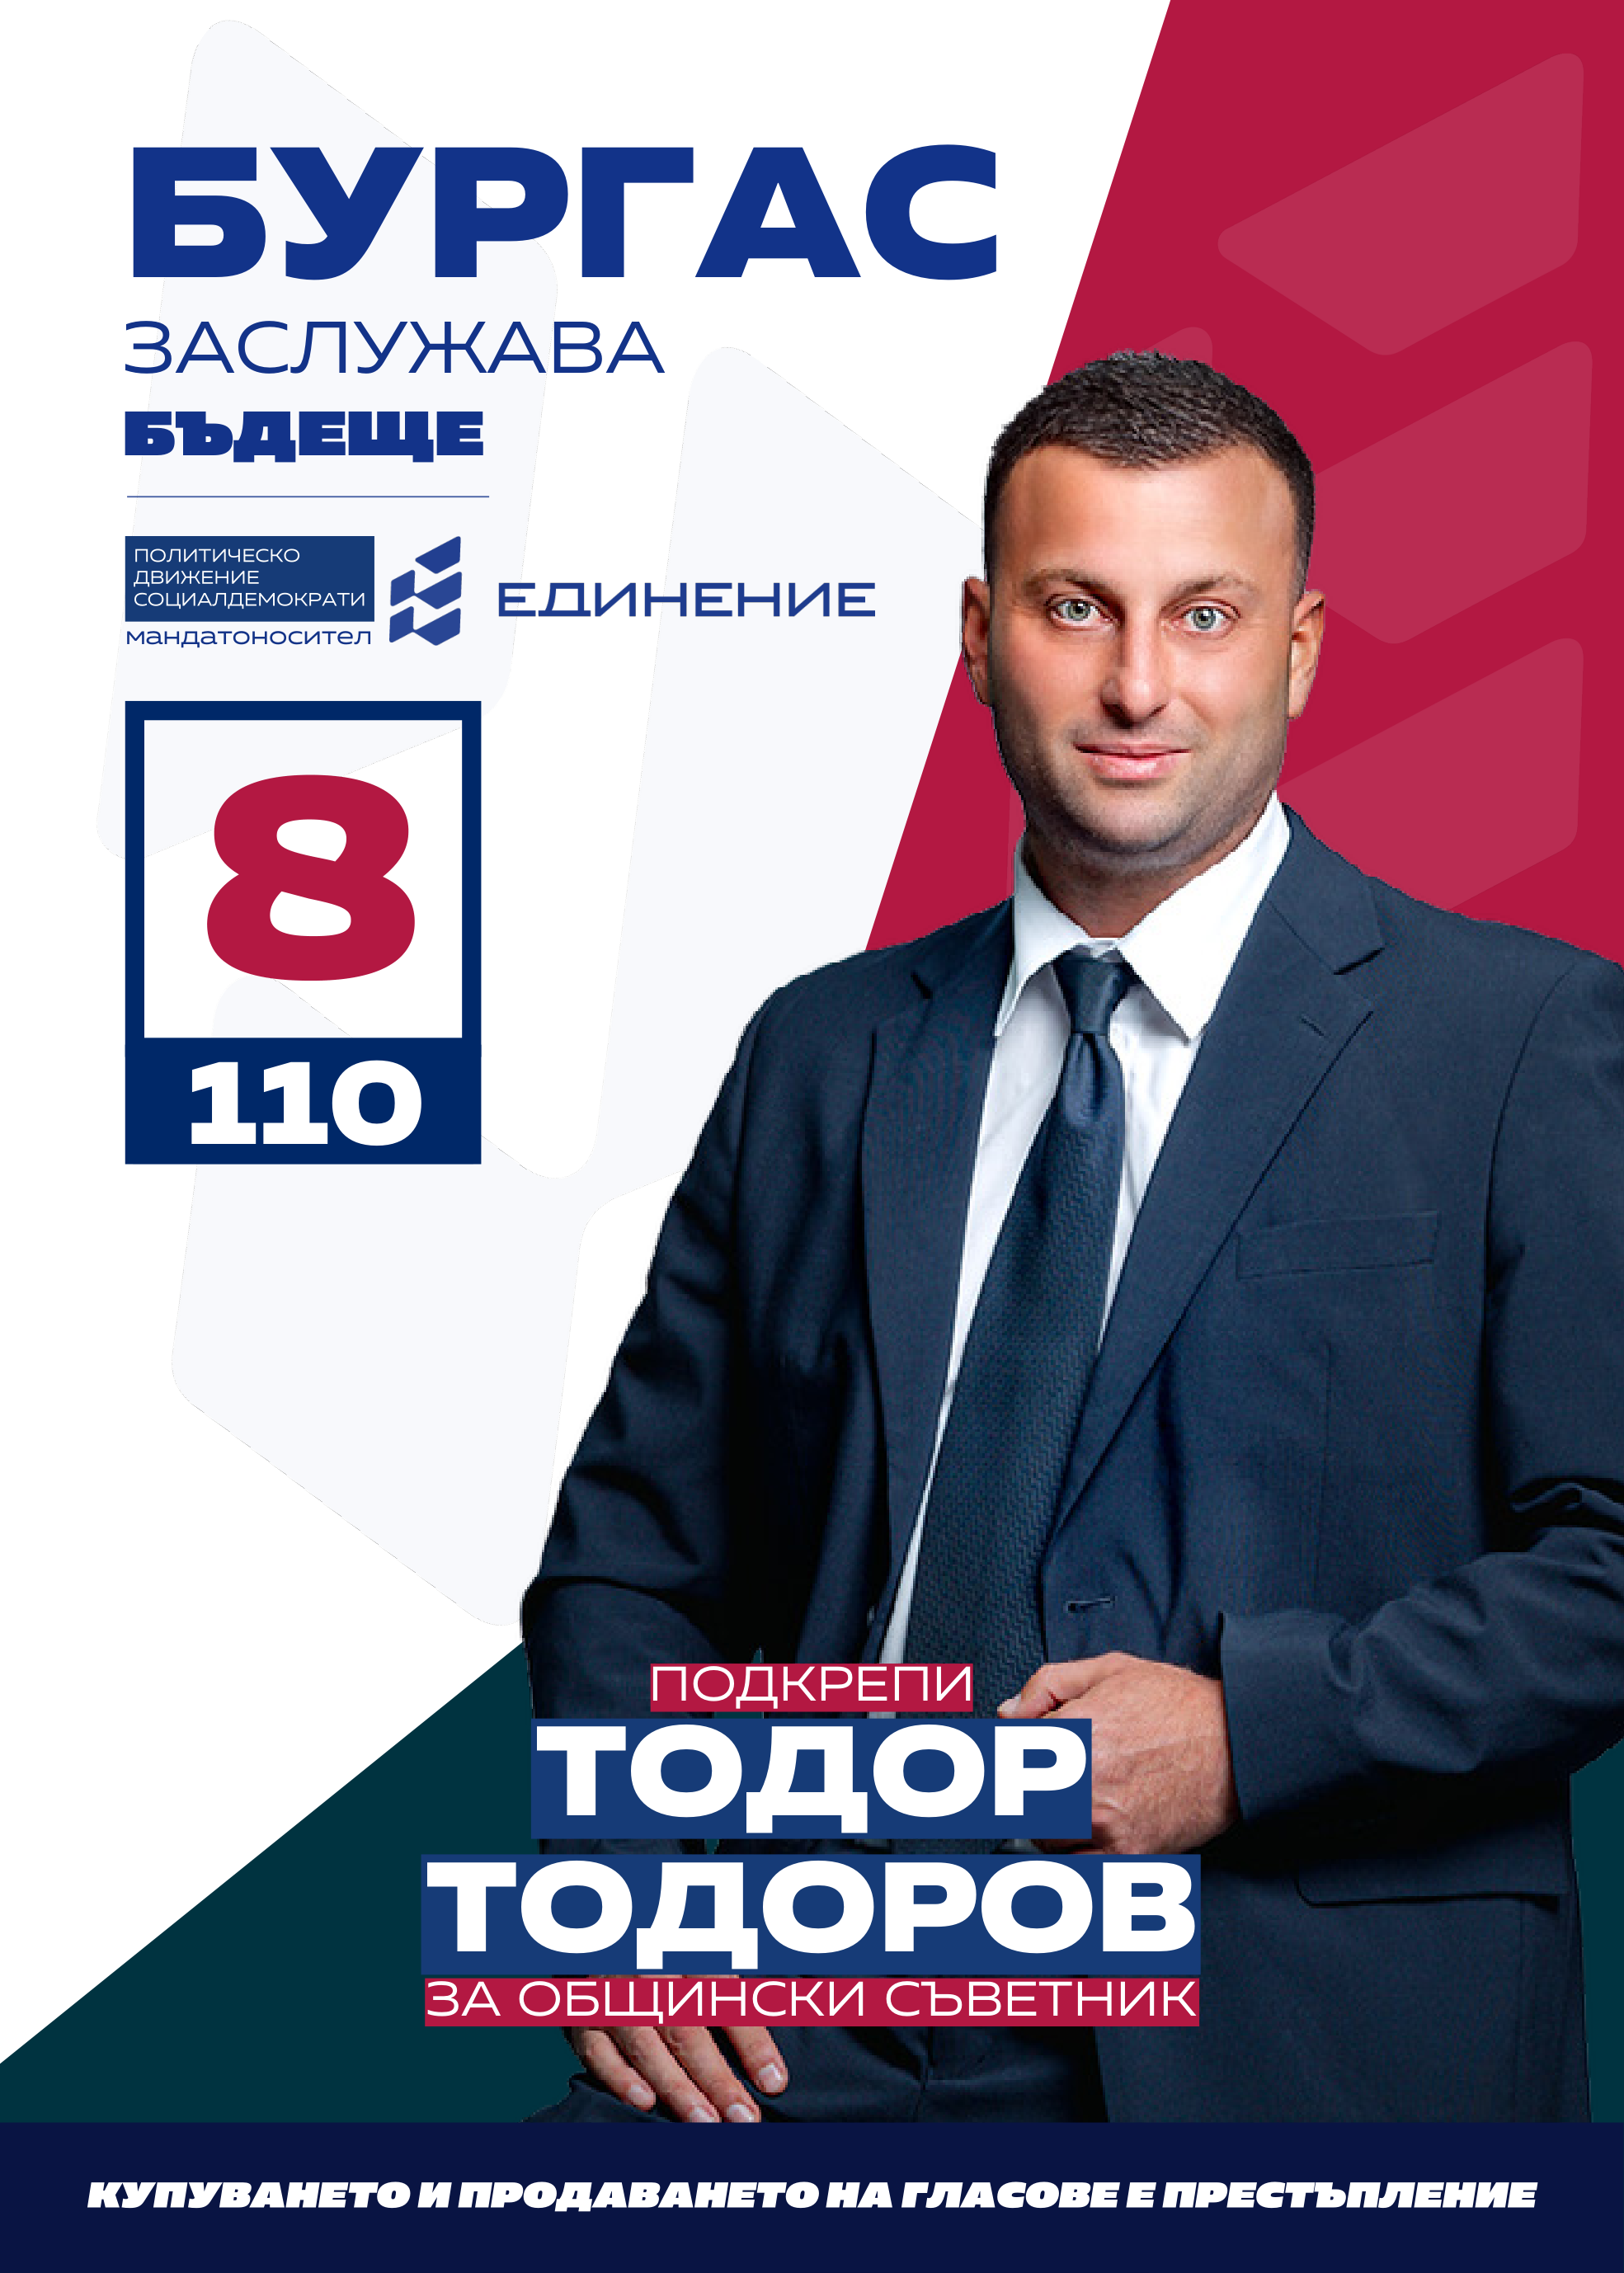 Тодор Тодоров – спортен педагог, супервайзър
Тодор Тодоров е на 37